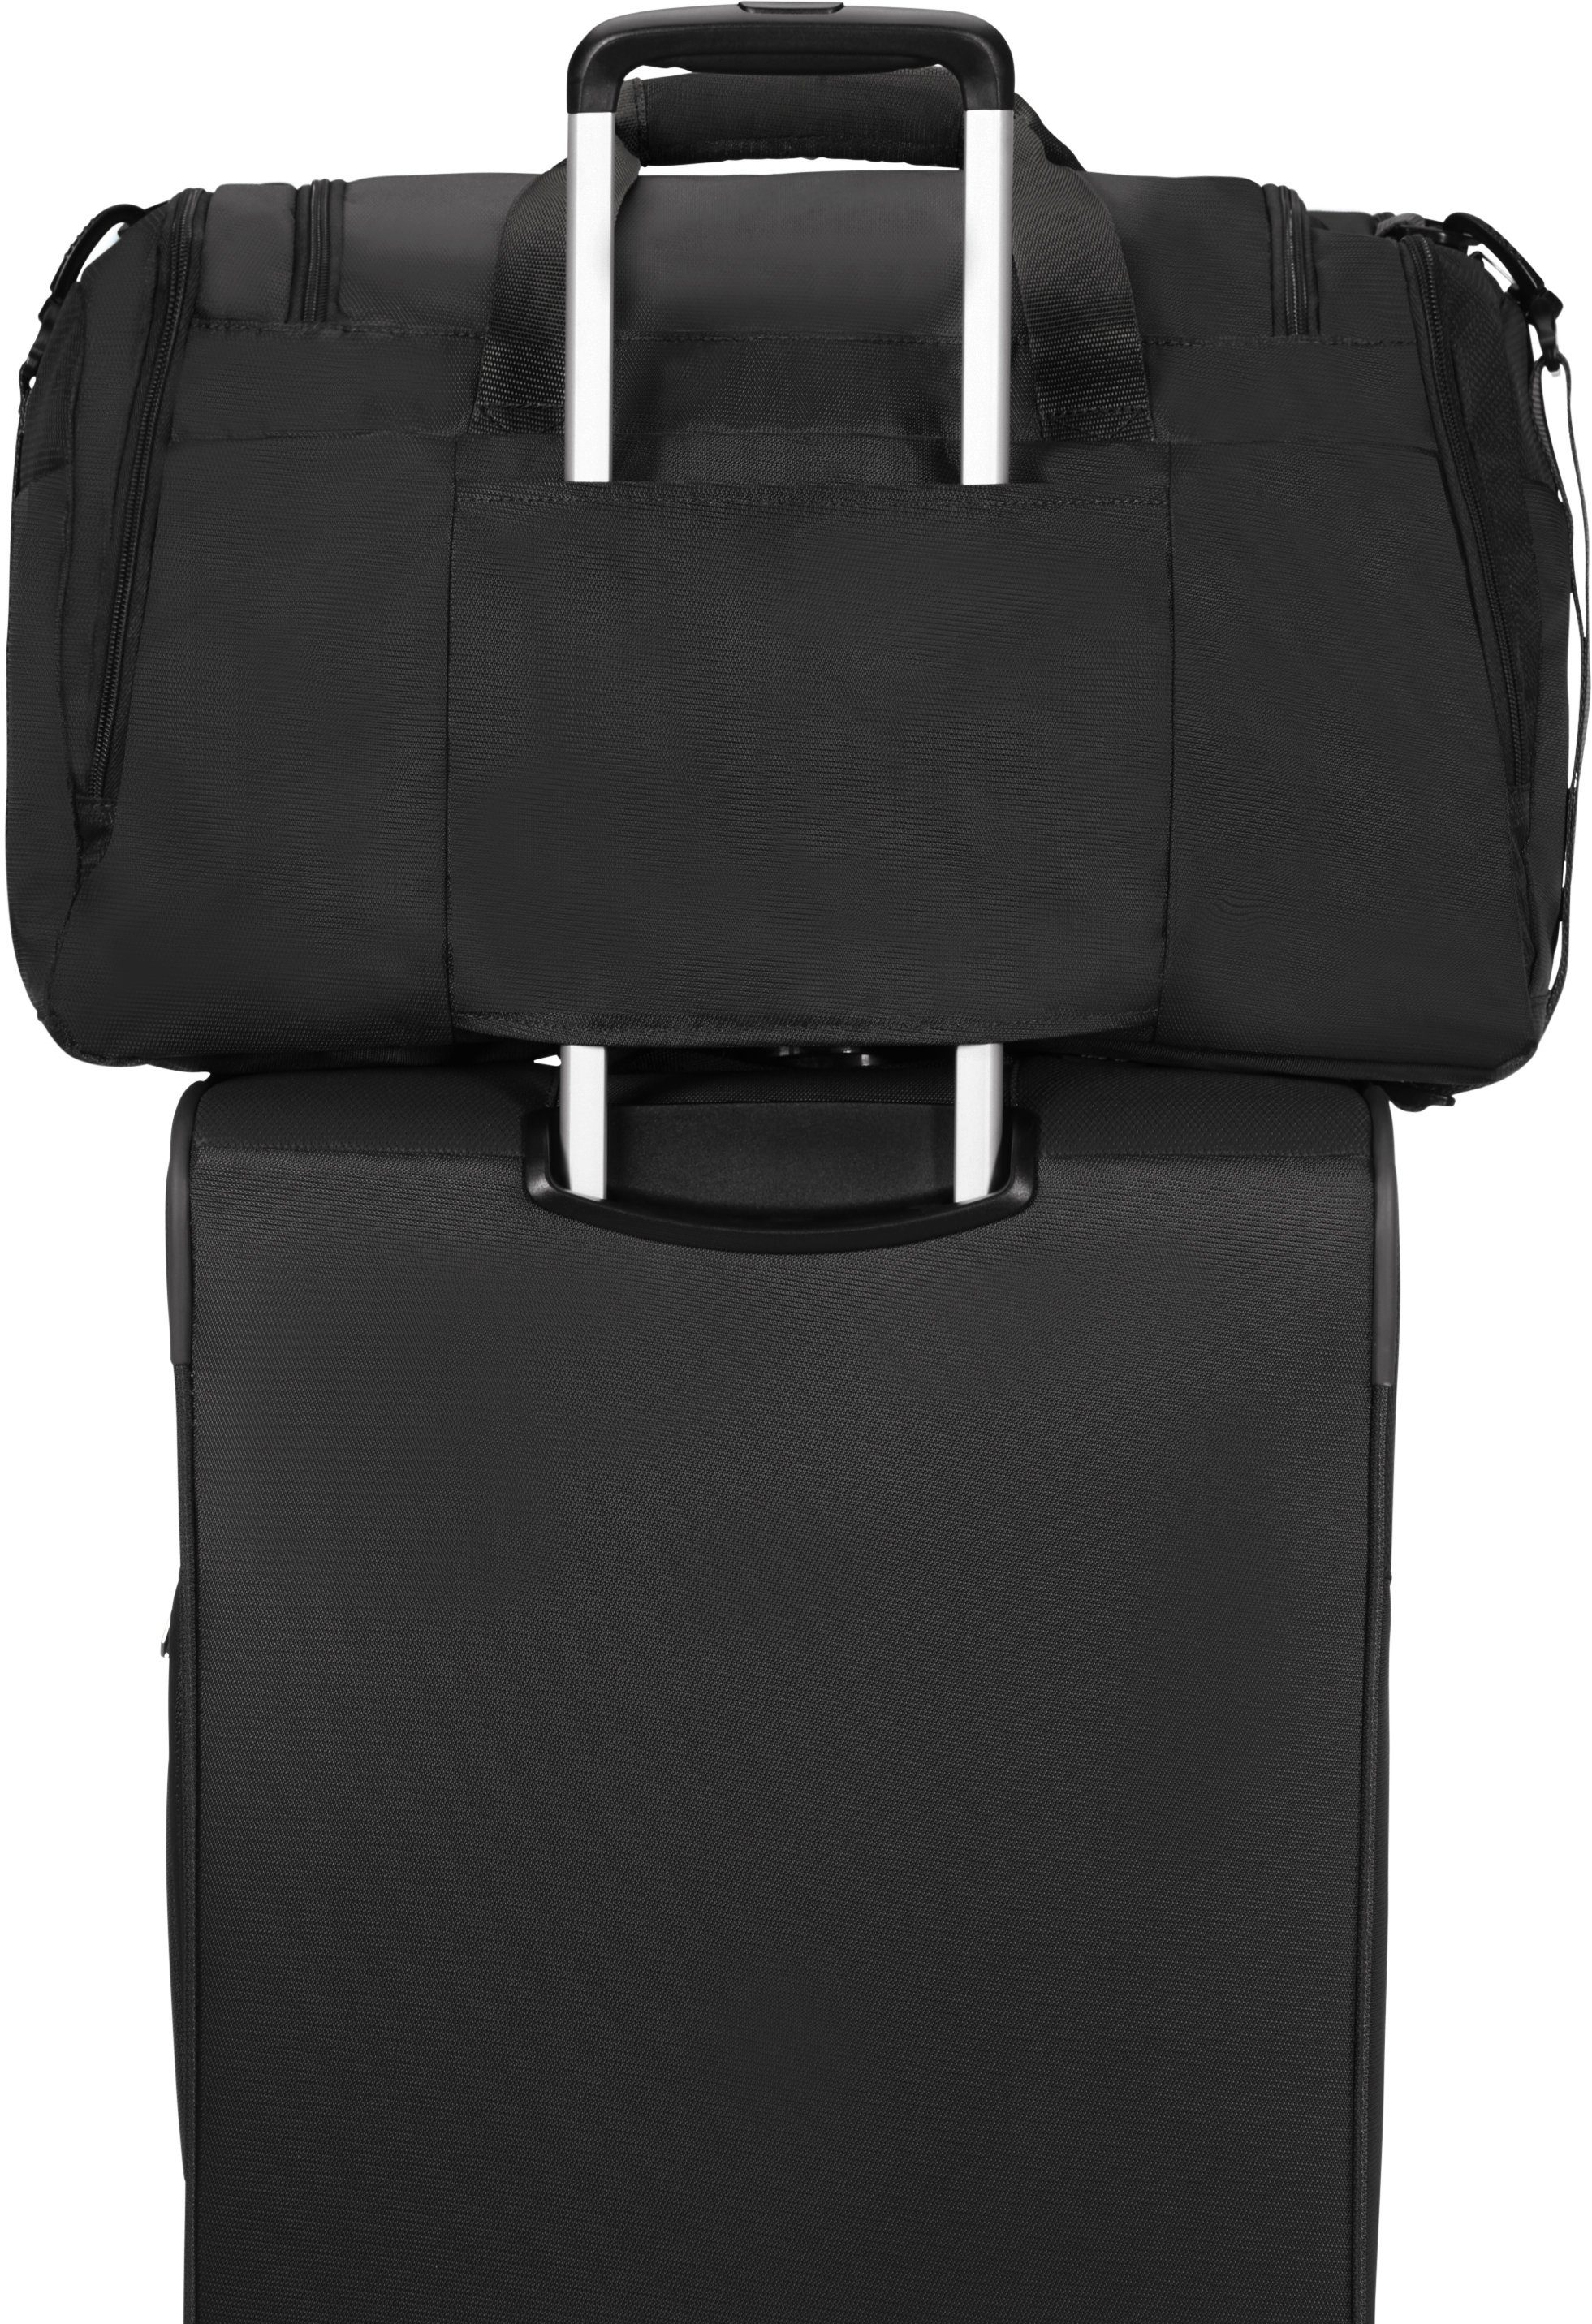 American Tourister® Reisetasche Summerfunk, mit schwarz Trolley-Aufsteck-System